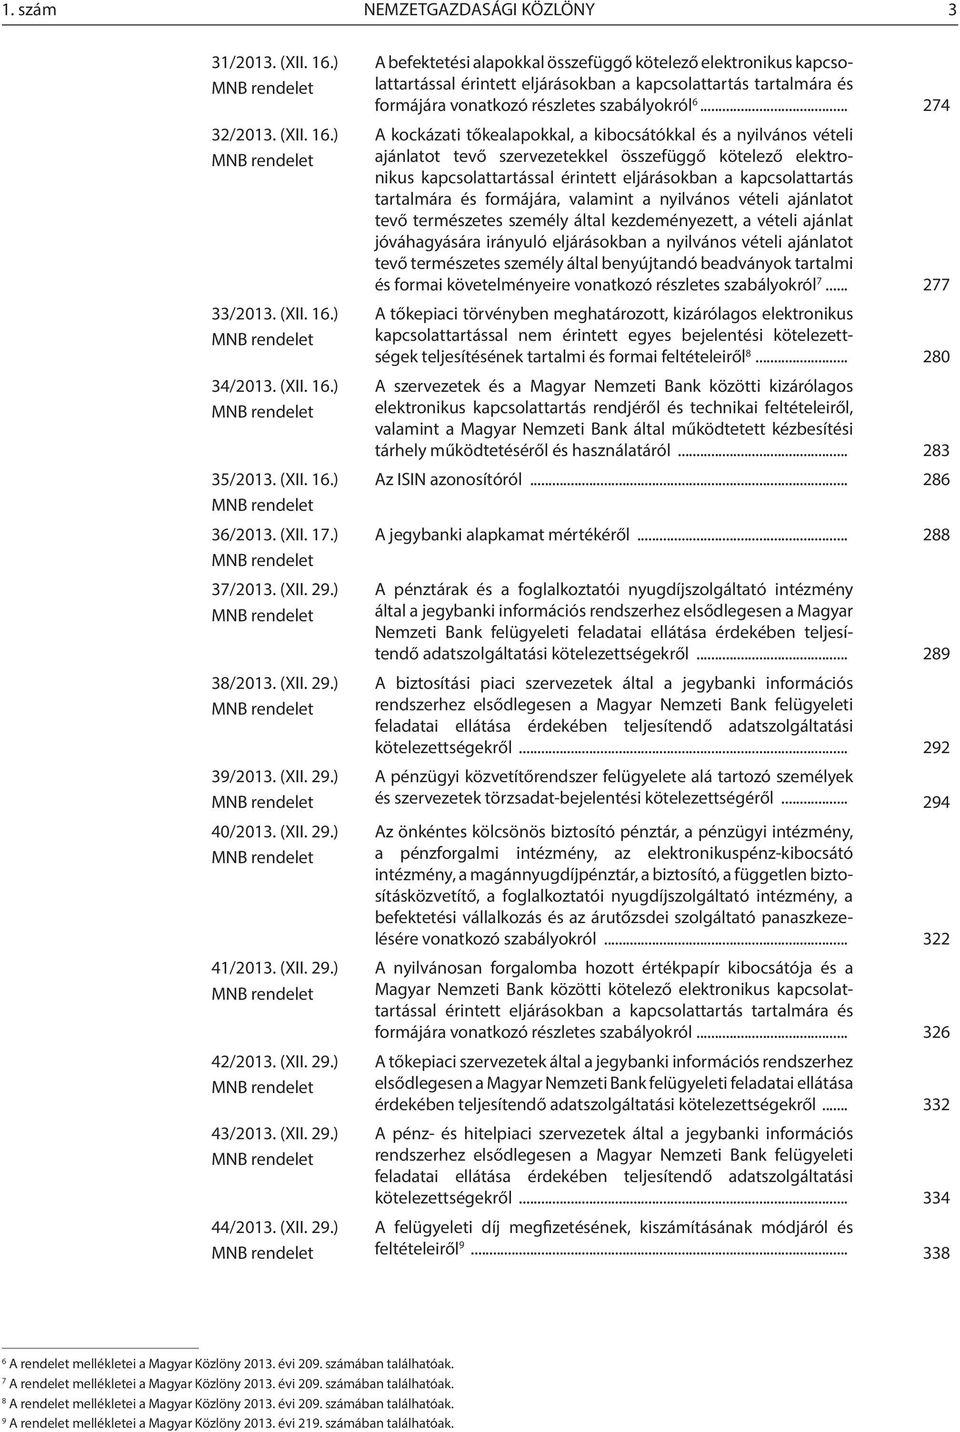 (XII. 29.) MNB rendelet 43/2013. (XII. 29.) MNB rendelet 44/2013. (XII. 29.) MNB rendelet A befektetési alapokkal összefüggő kötelező elektronikus kapcsolattartással érintett eljárásokban a kapcsolattartás tartalmára és formájára vonatkozó részletes szabályokról 6.